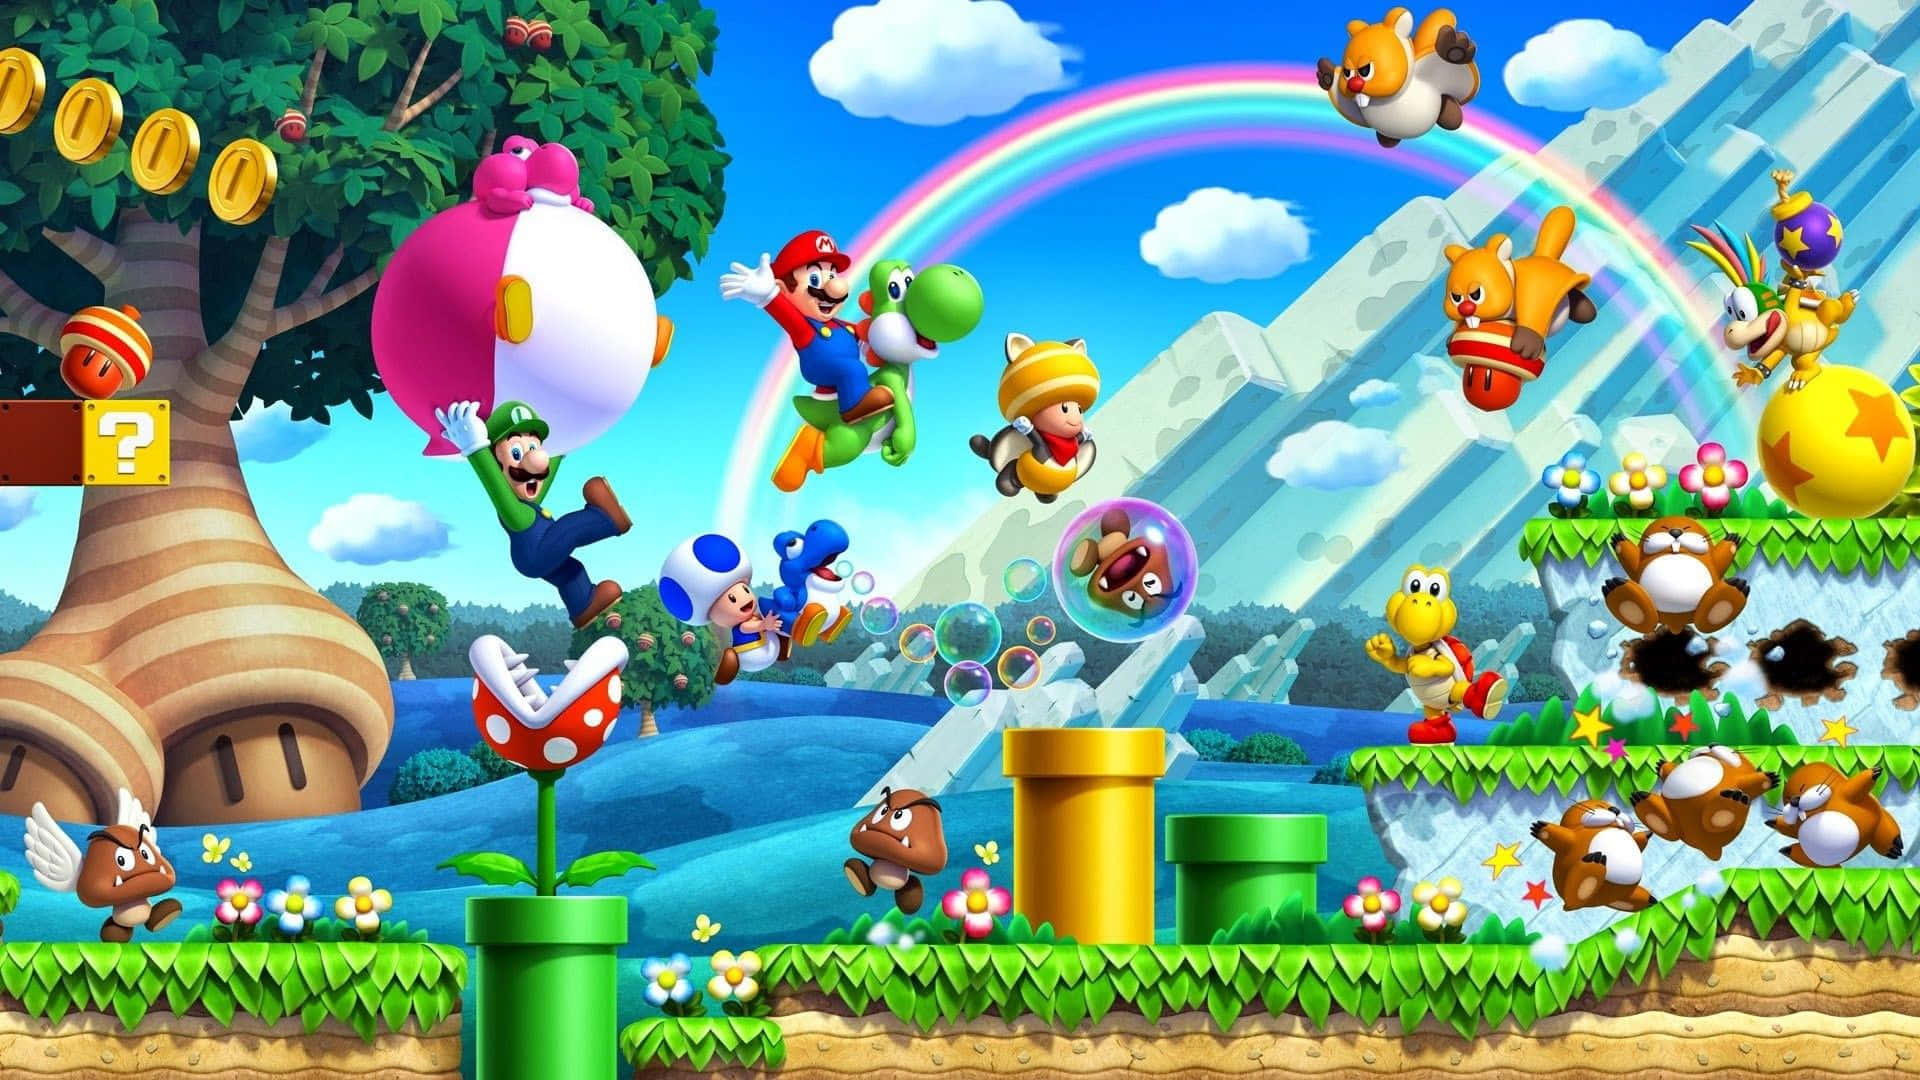 Jump into Adventure with Super Mario Bros!